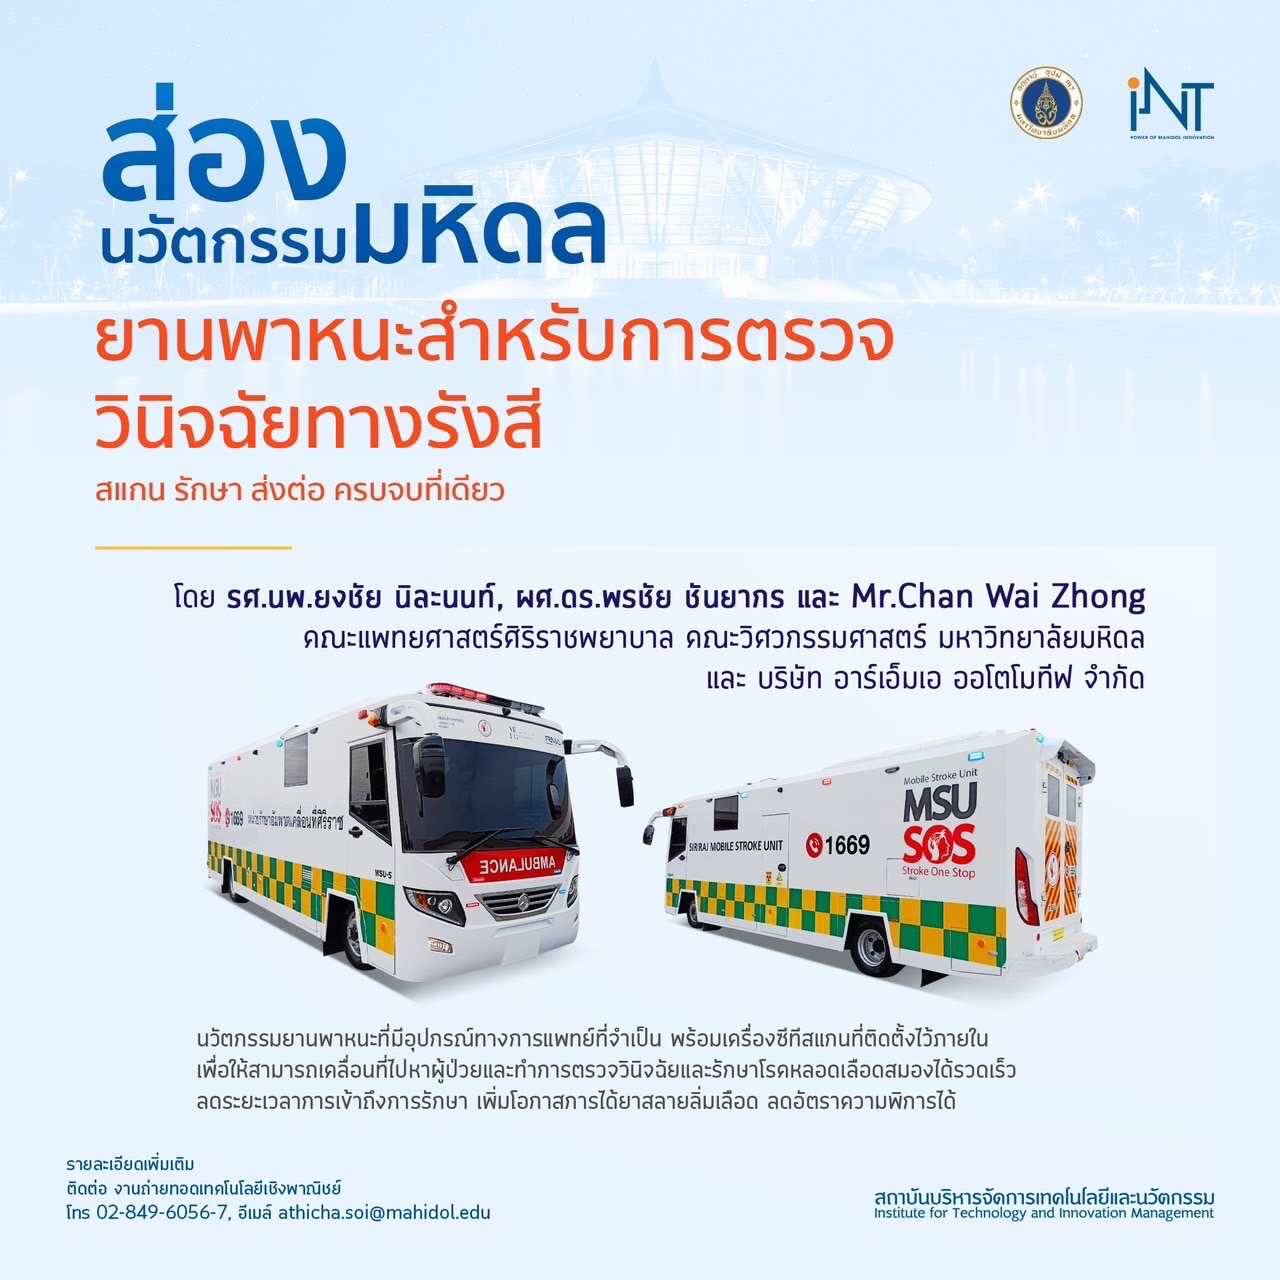 ม.มหิดล ยกระดับคุณภาพชีวิตคนไทย เตรียมขยายขอบเขตปฏิบัติการ Mobile Stroke Unit ที่ได้มาตรฐานจากบกสู่ทะเล หวังช่วยคนไทยรอดพิการและอัมพาตอันเกิดจากโรคหลอดเลือดสมองเฉียบพลัน